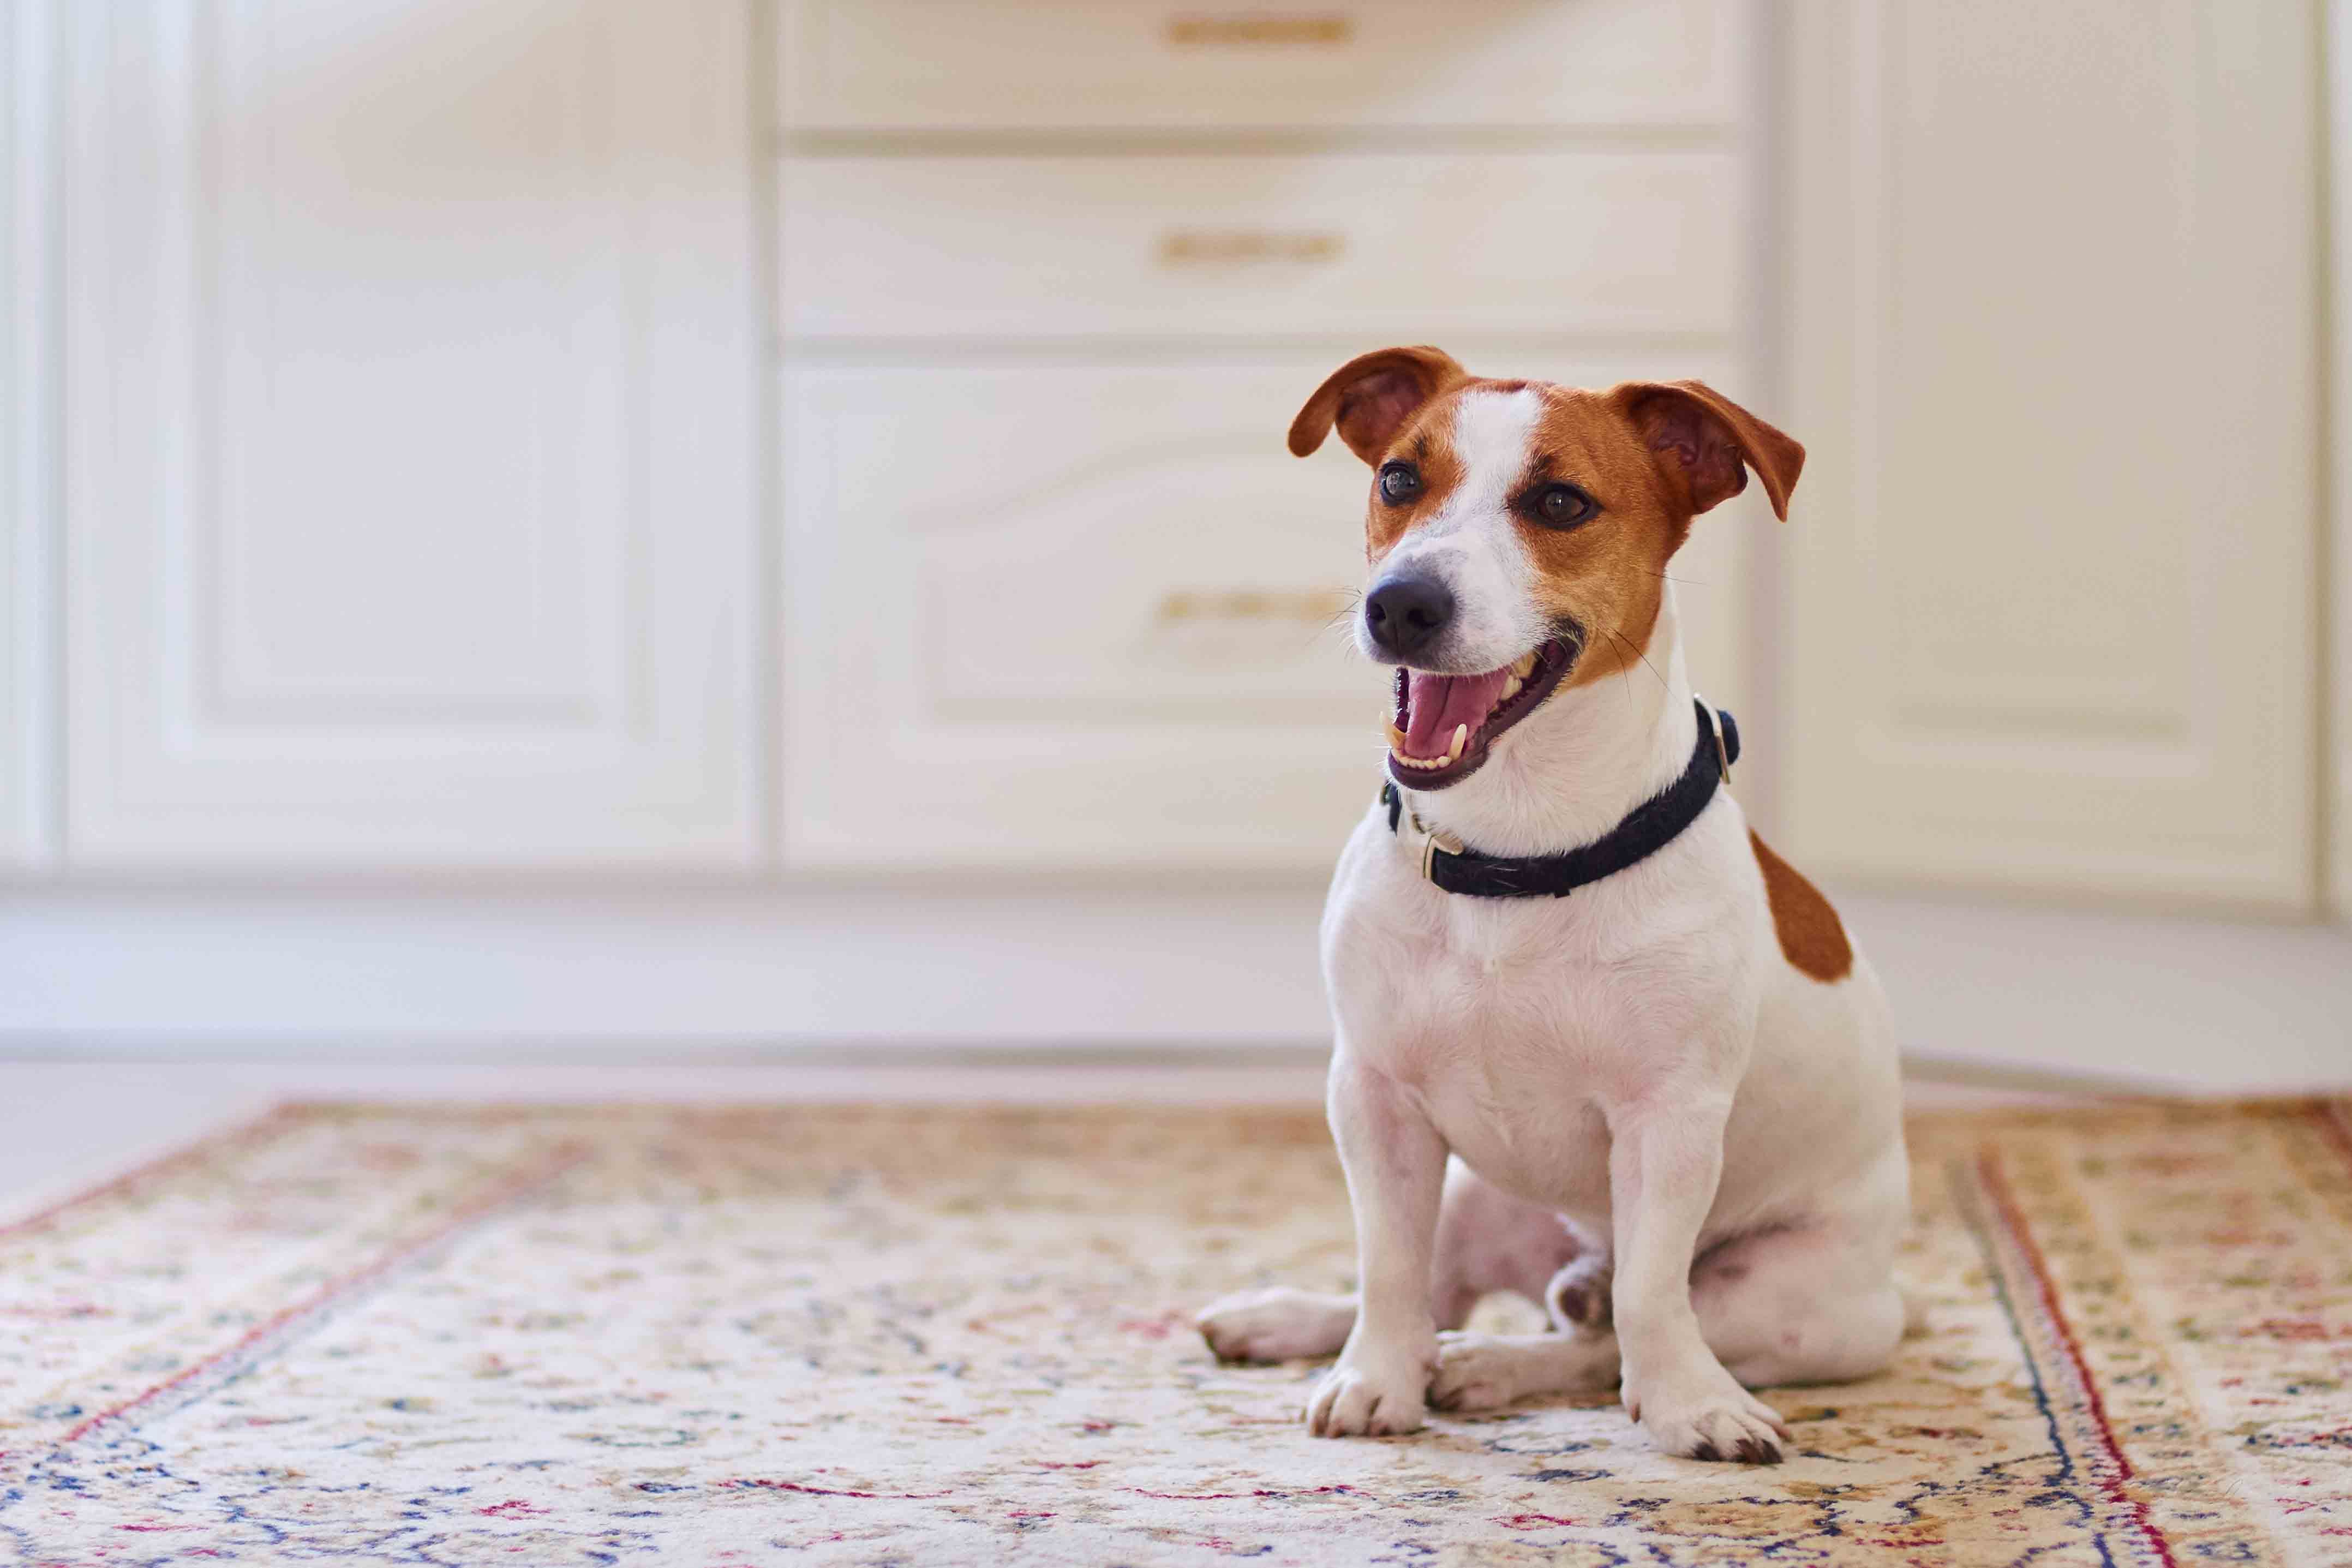 pet-friendly-flooring-carpet-floor-flooring-for-pets-indie-dog